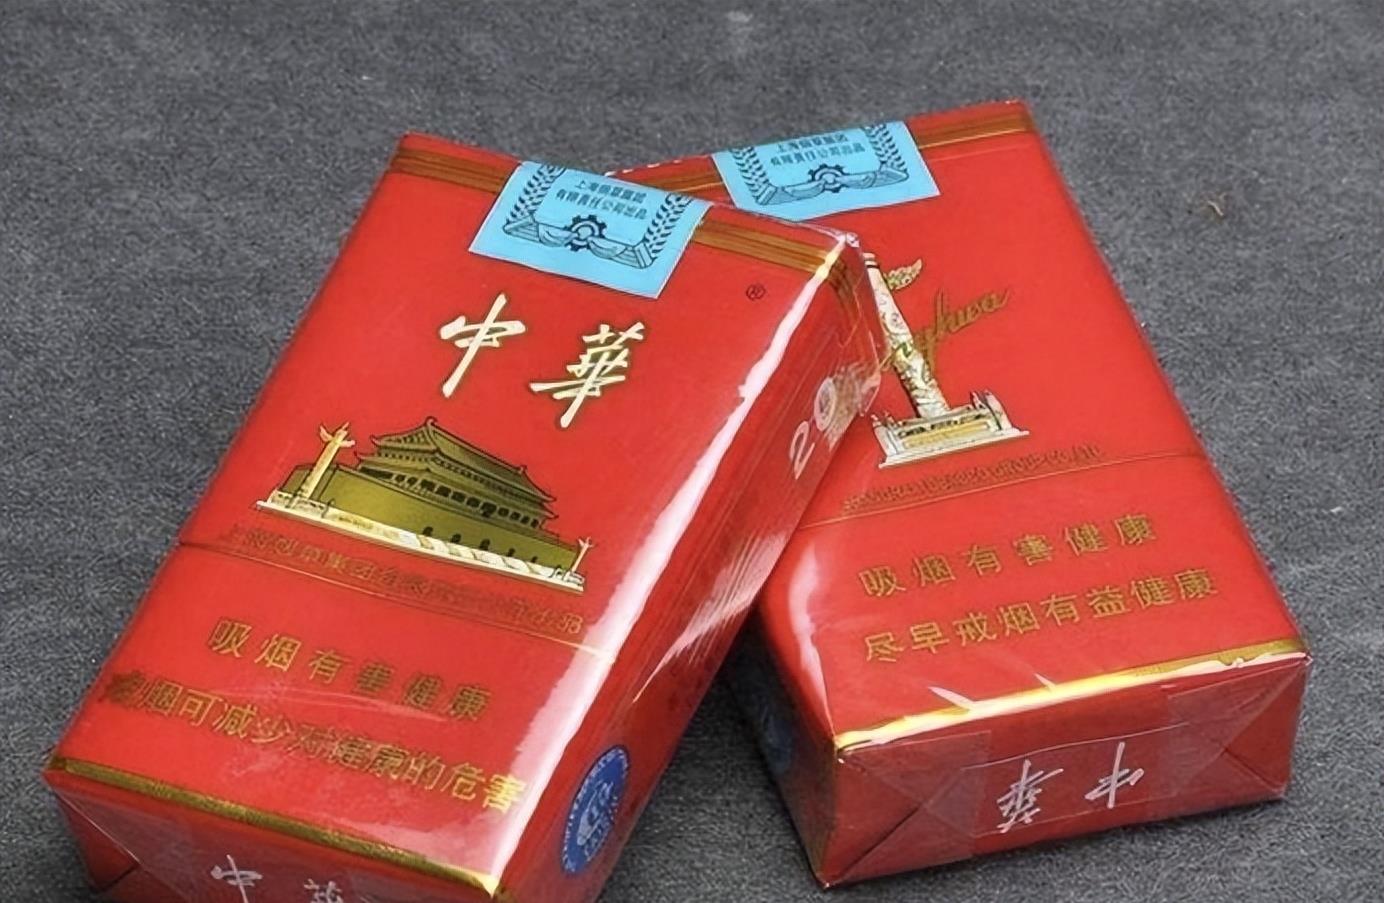 越南烟_越南烟是真的假的_越南烟的品牌大全图片